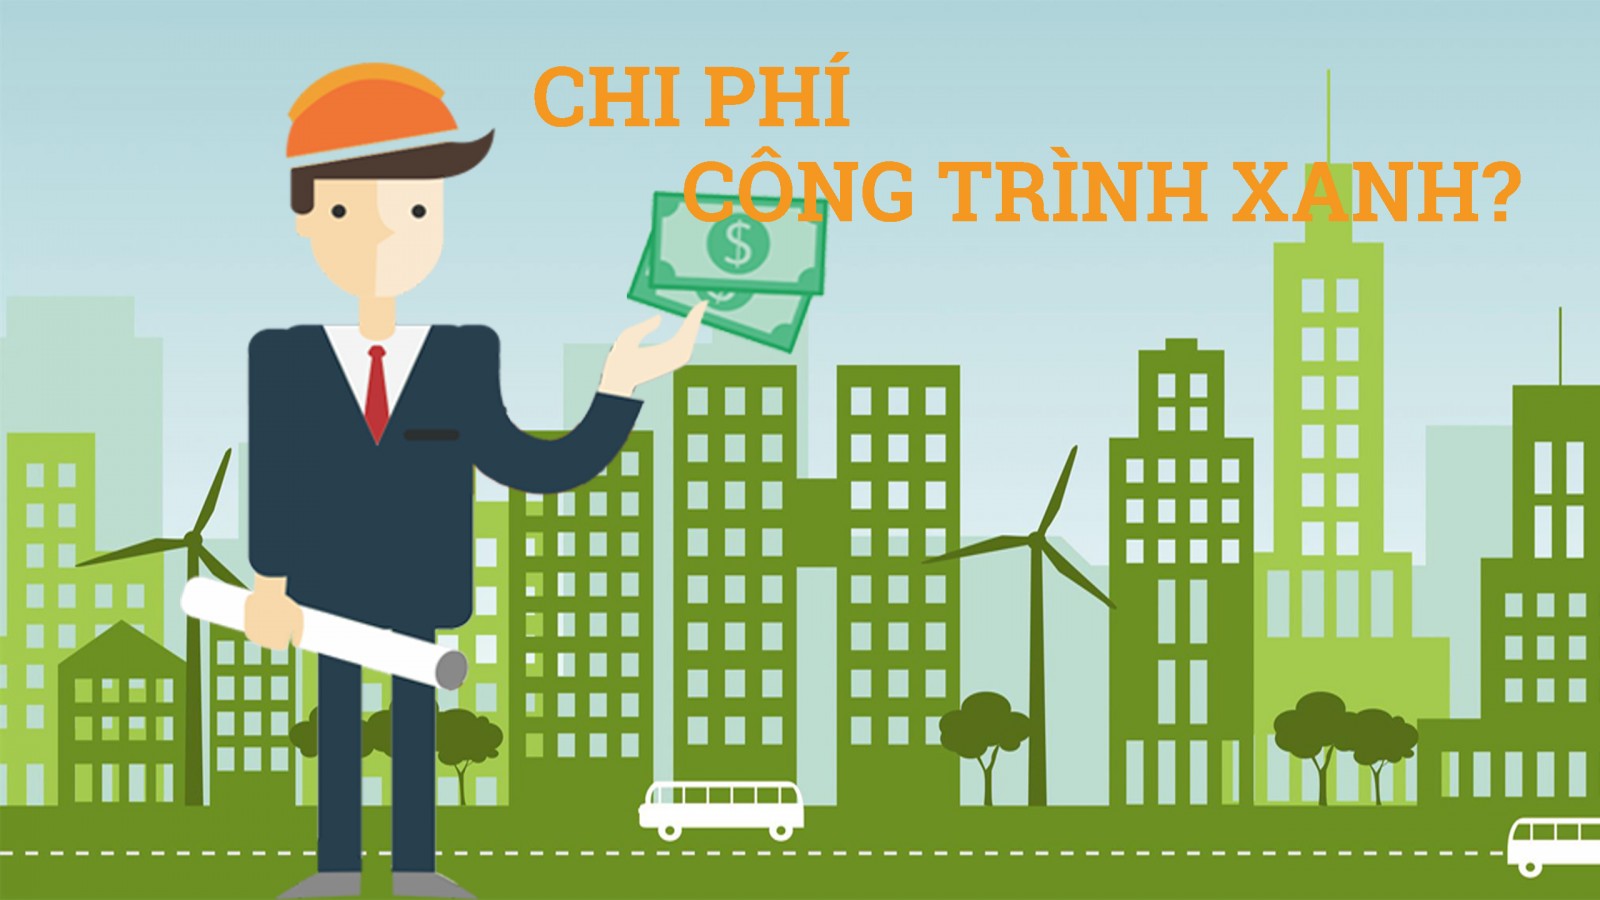 tâm lý e ngại chi phí đầu tư cao là một trong những lý do cản trở phát triển công trình xanh tại Việt Nam.